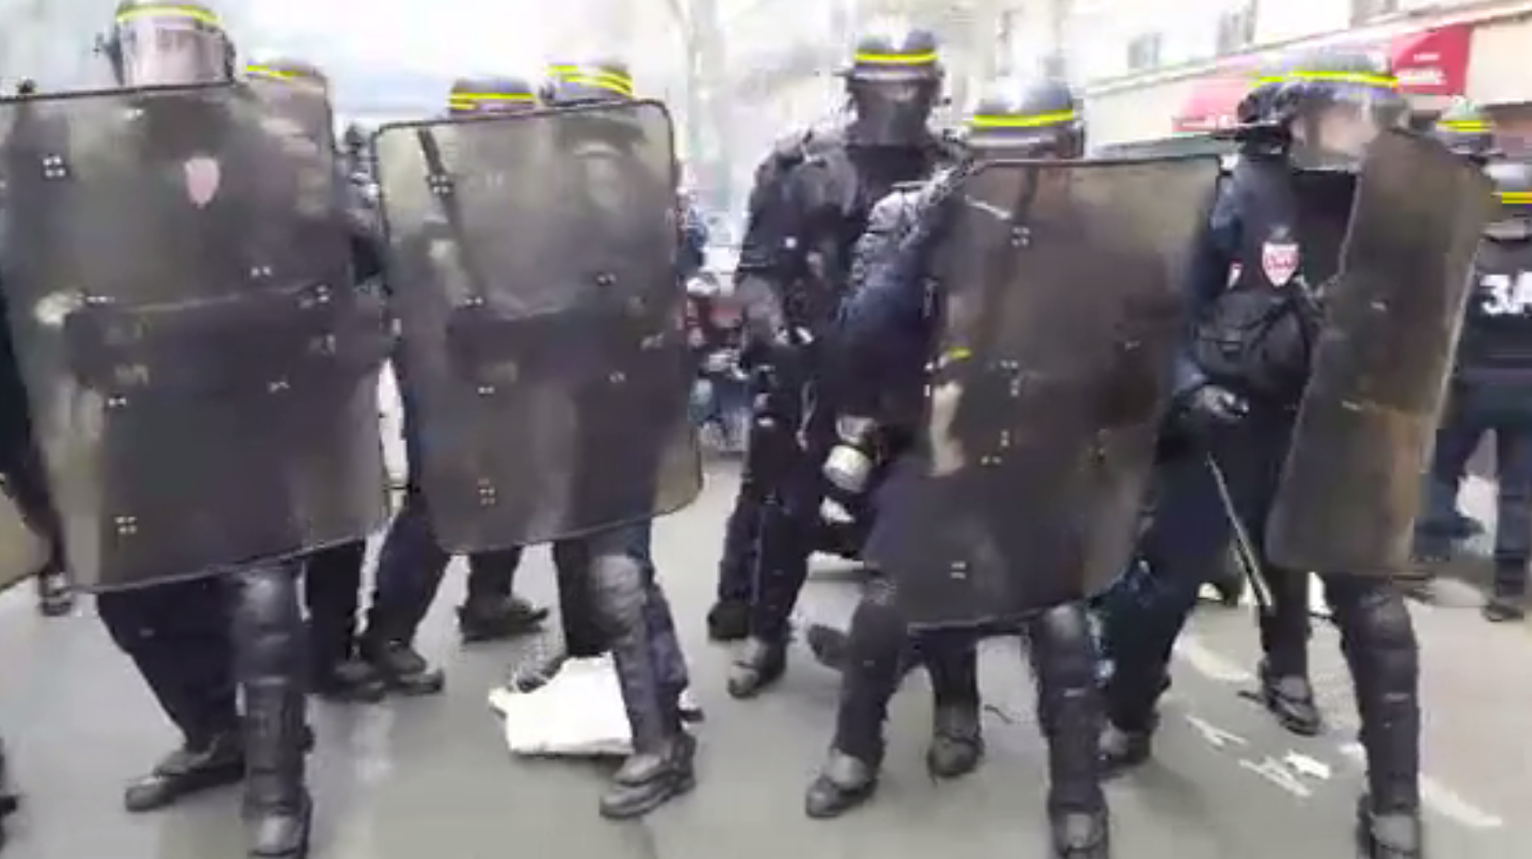 En images : gaz lacrymogènes, blessés, voitures défoncées à Paris (VIDEO, IMAGES PERTURBANTES)